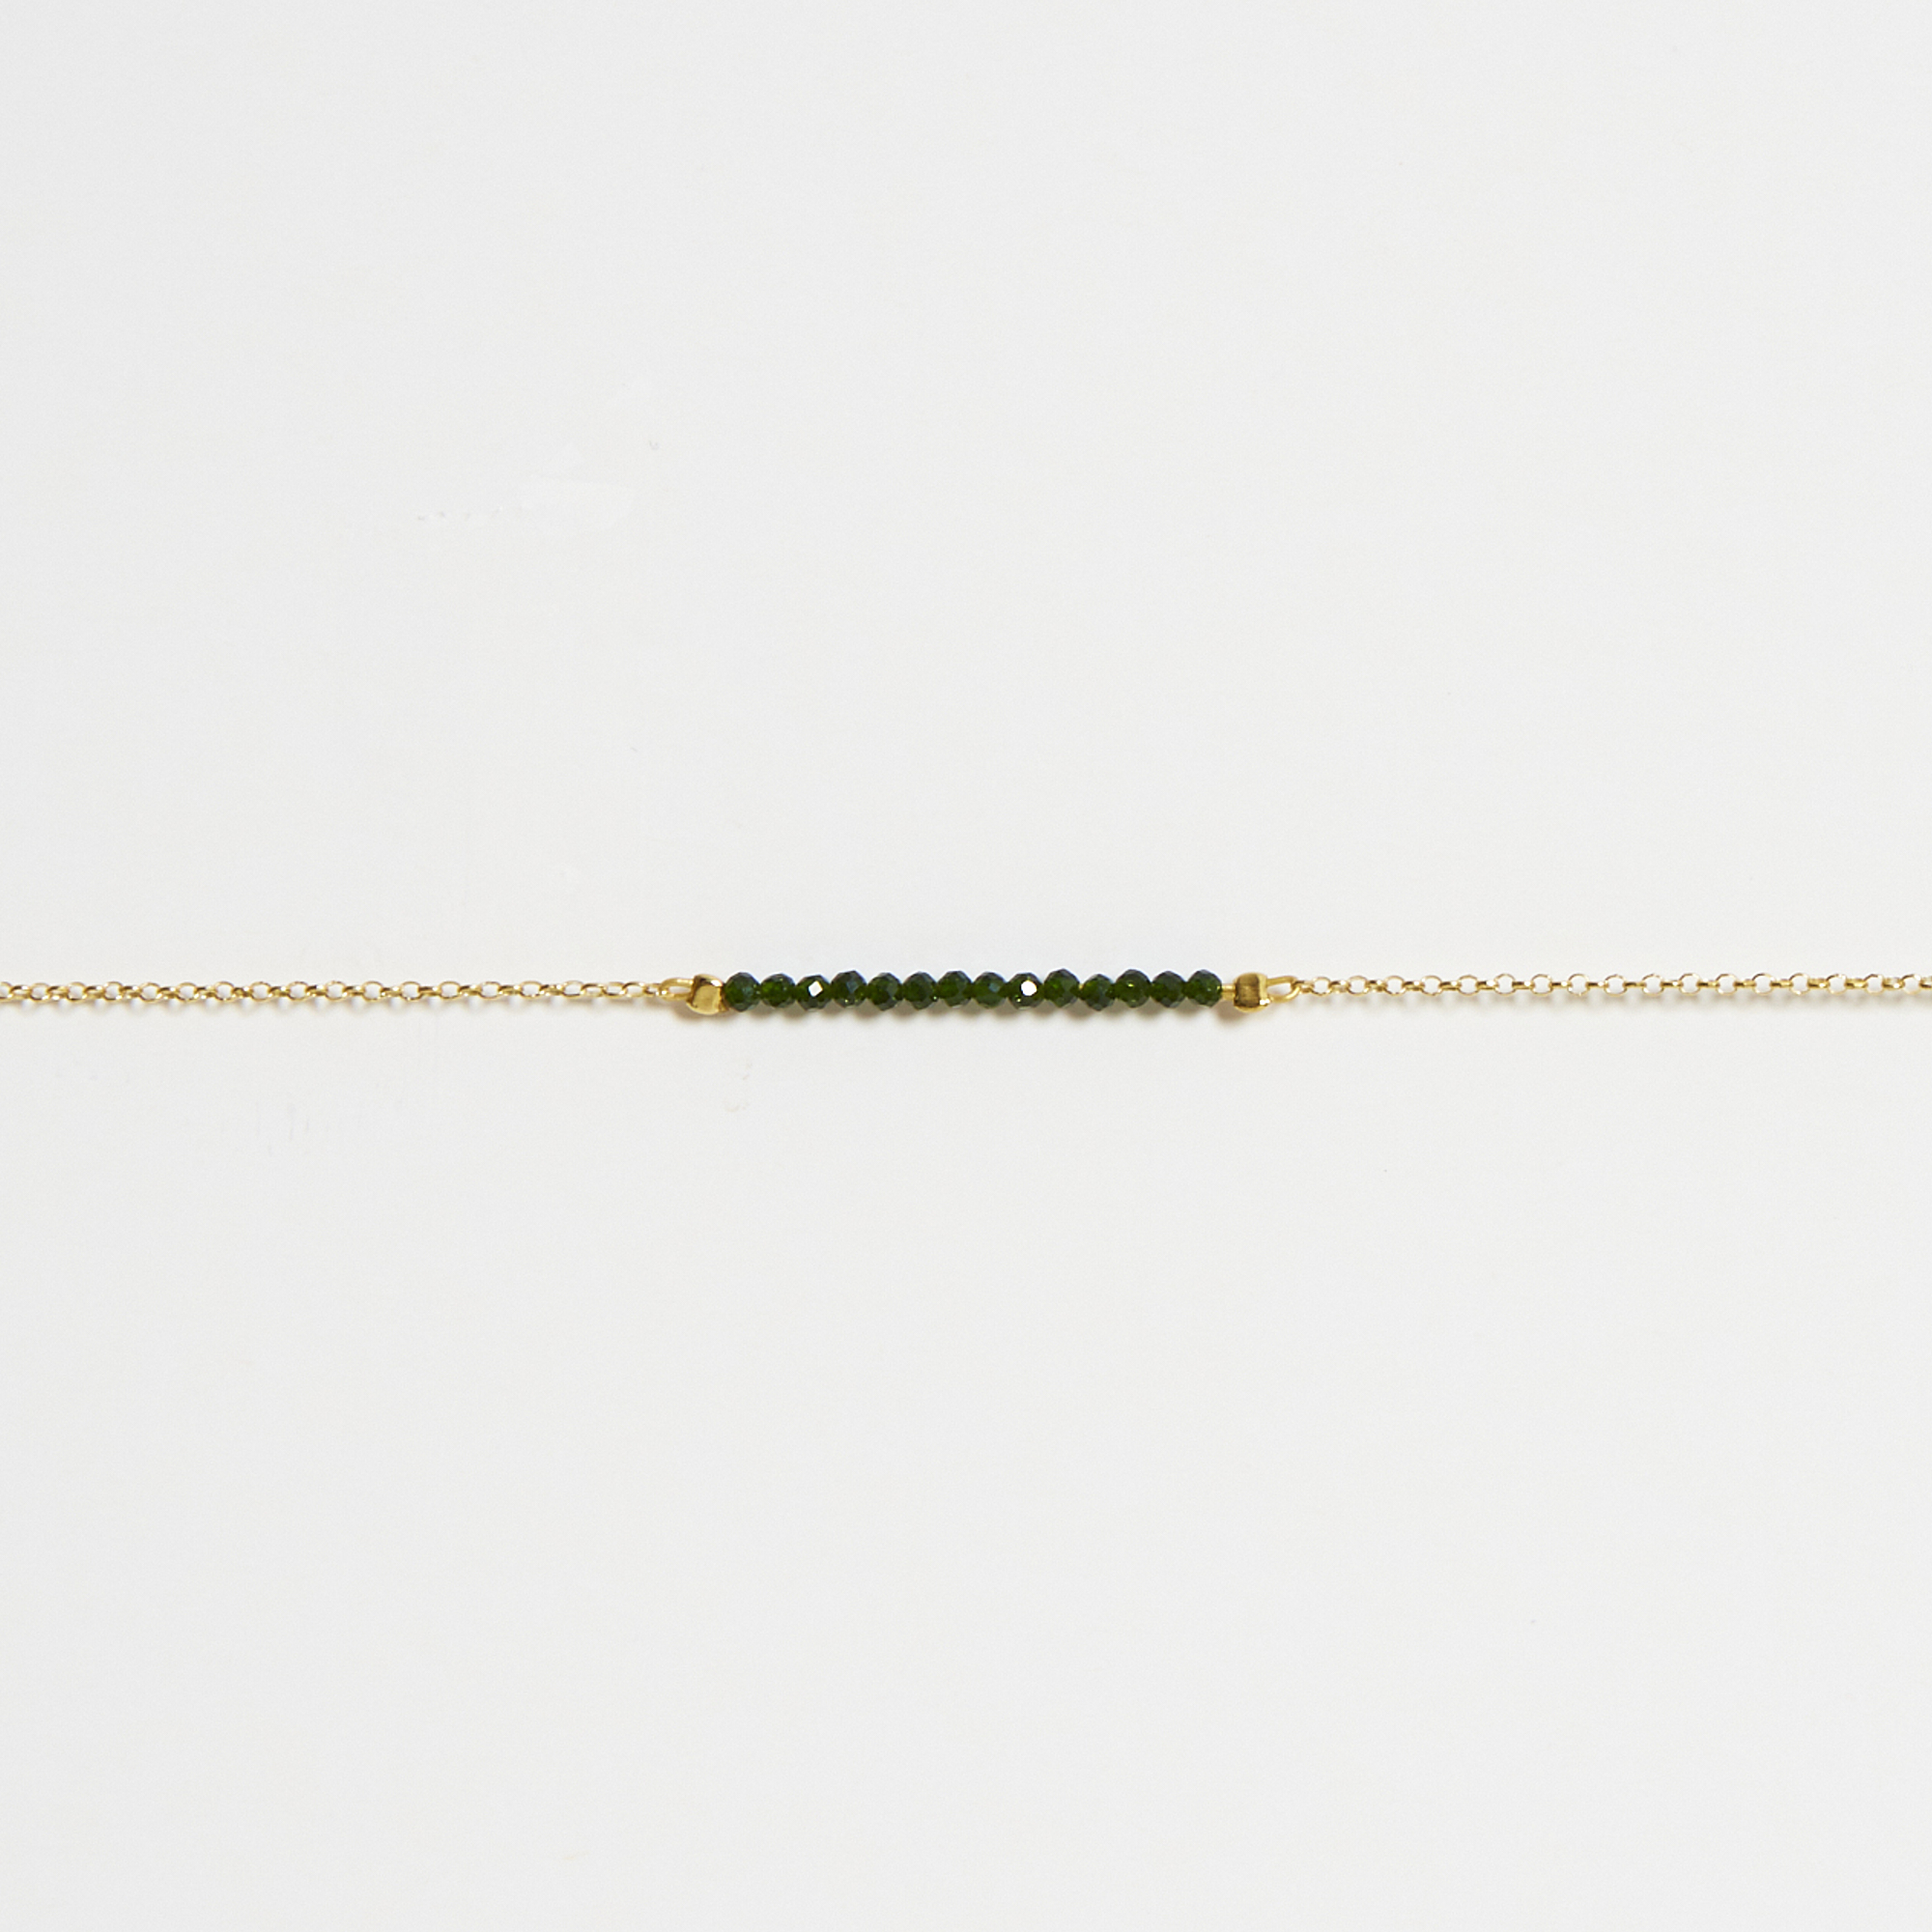 Grass Bracelet - 